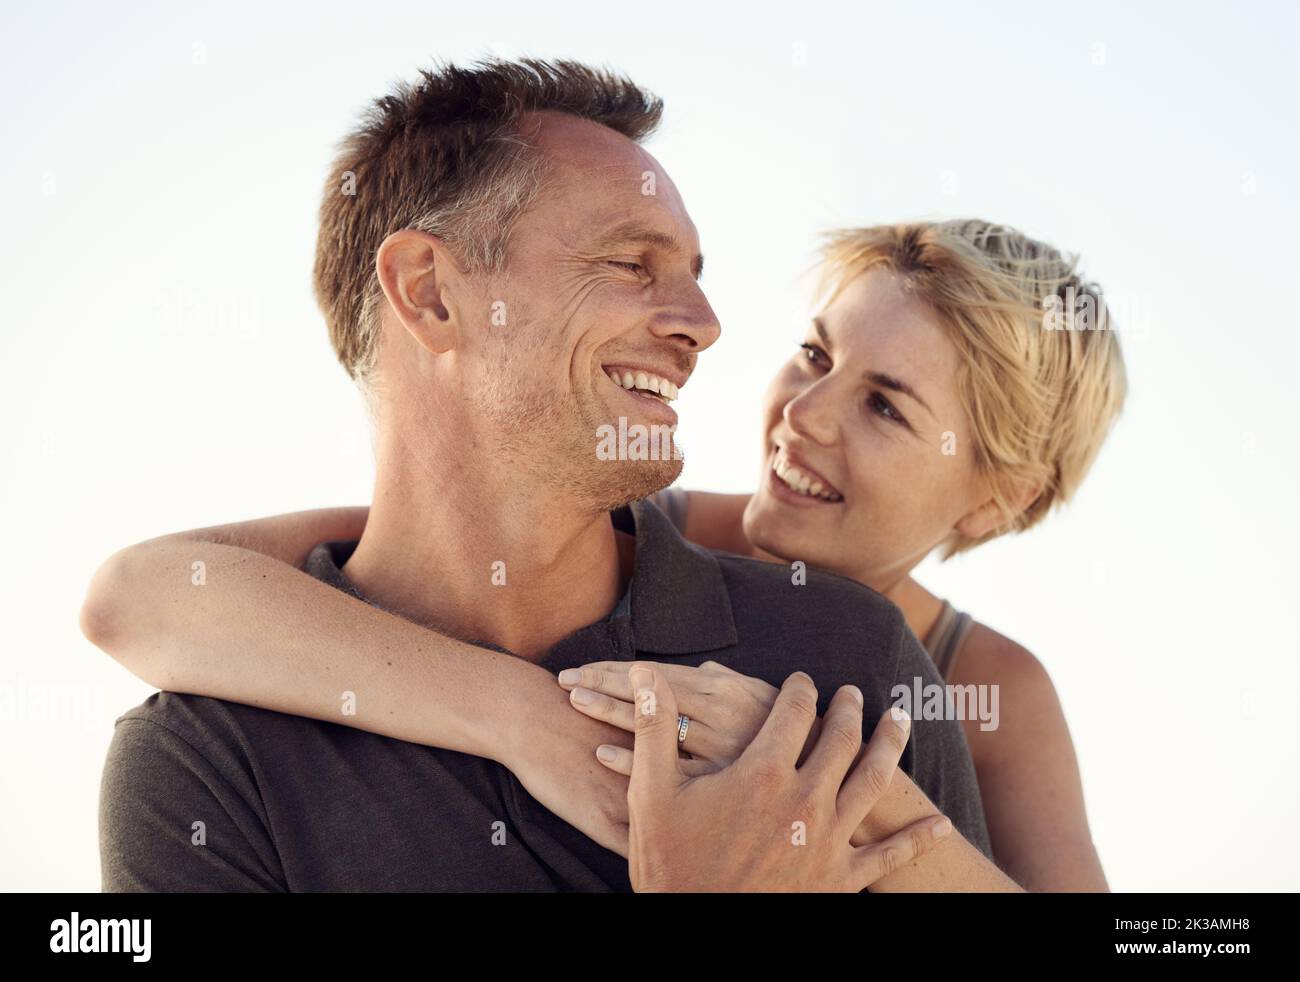 Mettere il nostro matrimonio al primo posto. Una coppia matura che si gode una giornata in spiaggia. Foto Stock